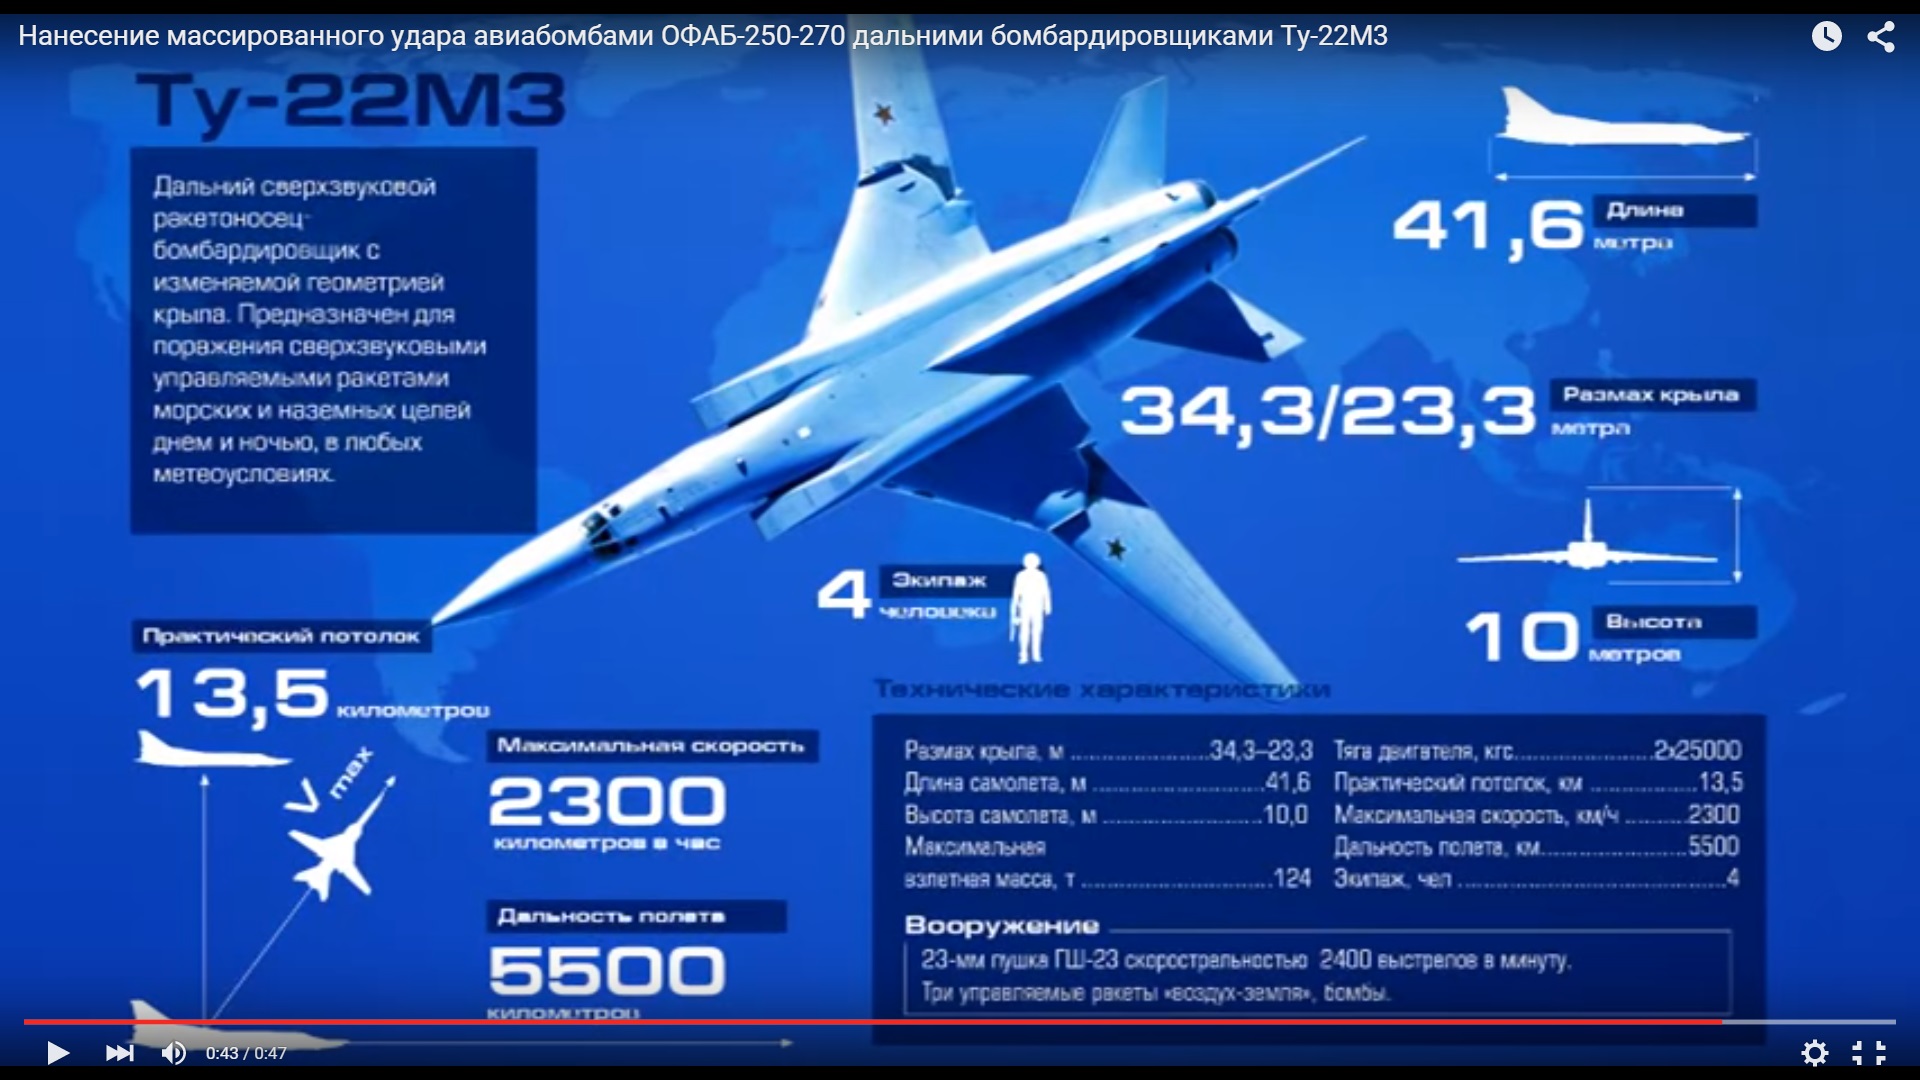 Сколько у россии самолетов ту 22